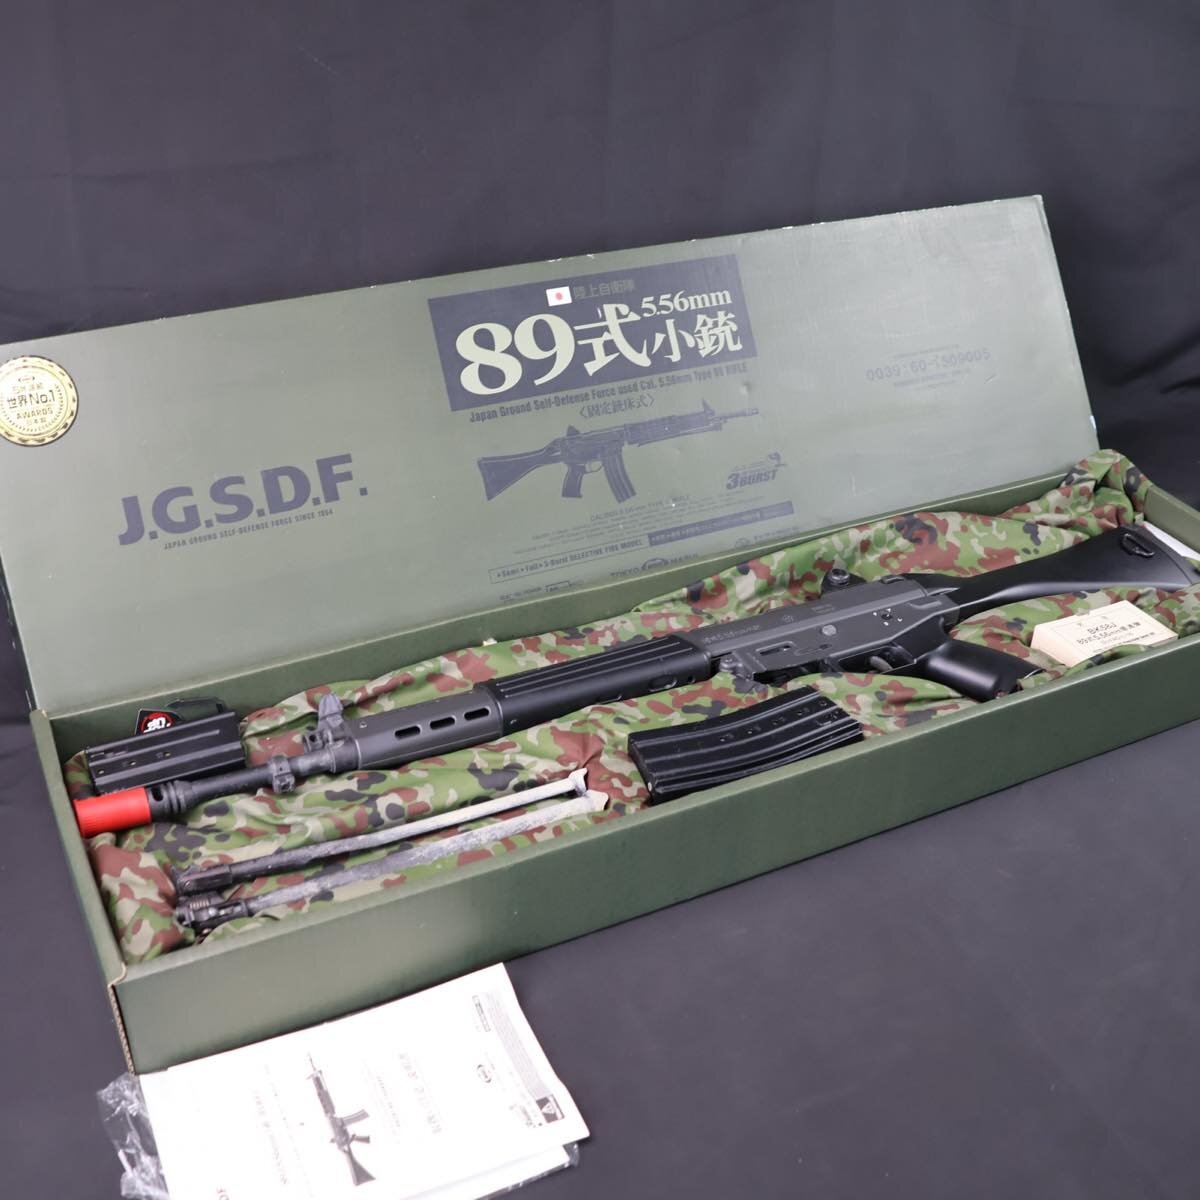 東京マルイ 89式 小銃 電動ガン 陸上自衛隊 陸自 JGSDF #11216の画像1